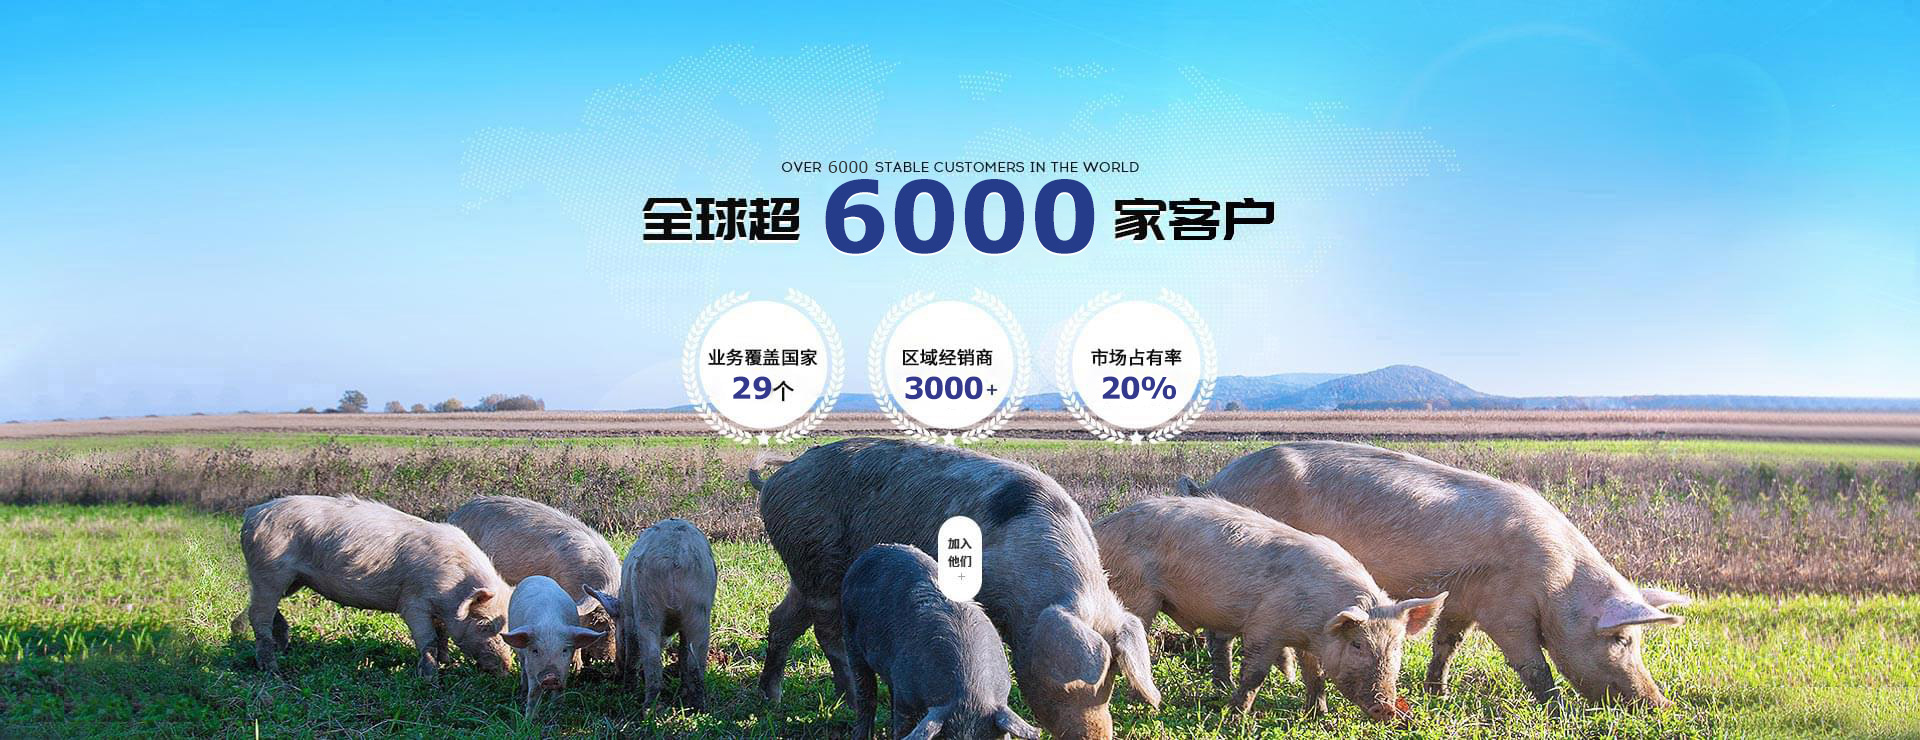 凯发AG·(中国区)官方网站-饲料添加剂市场